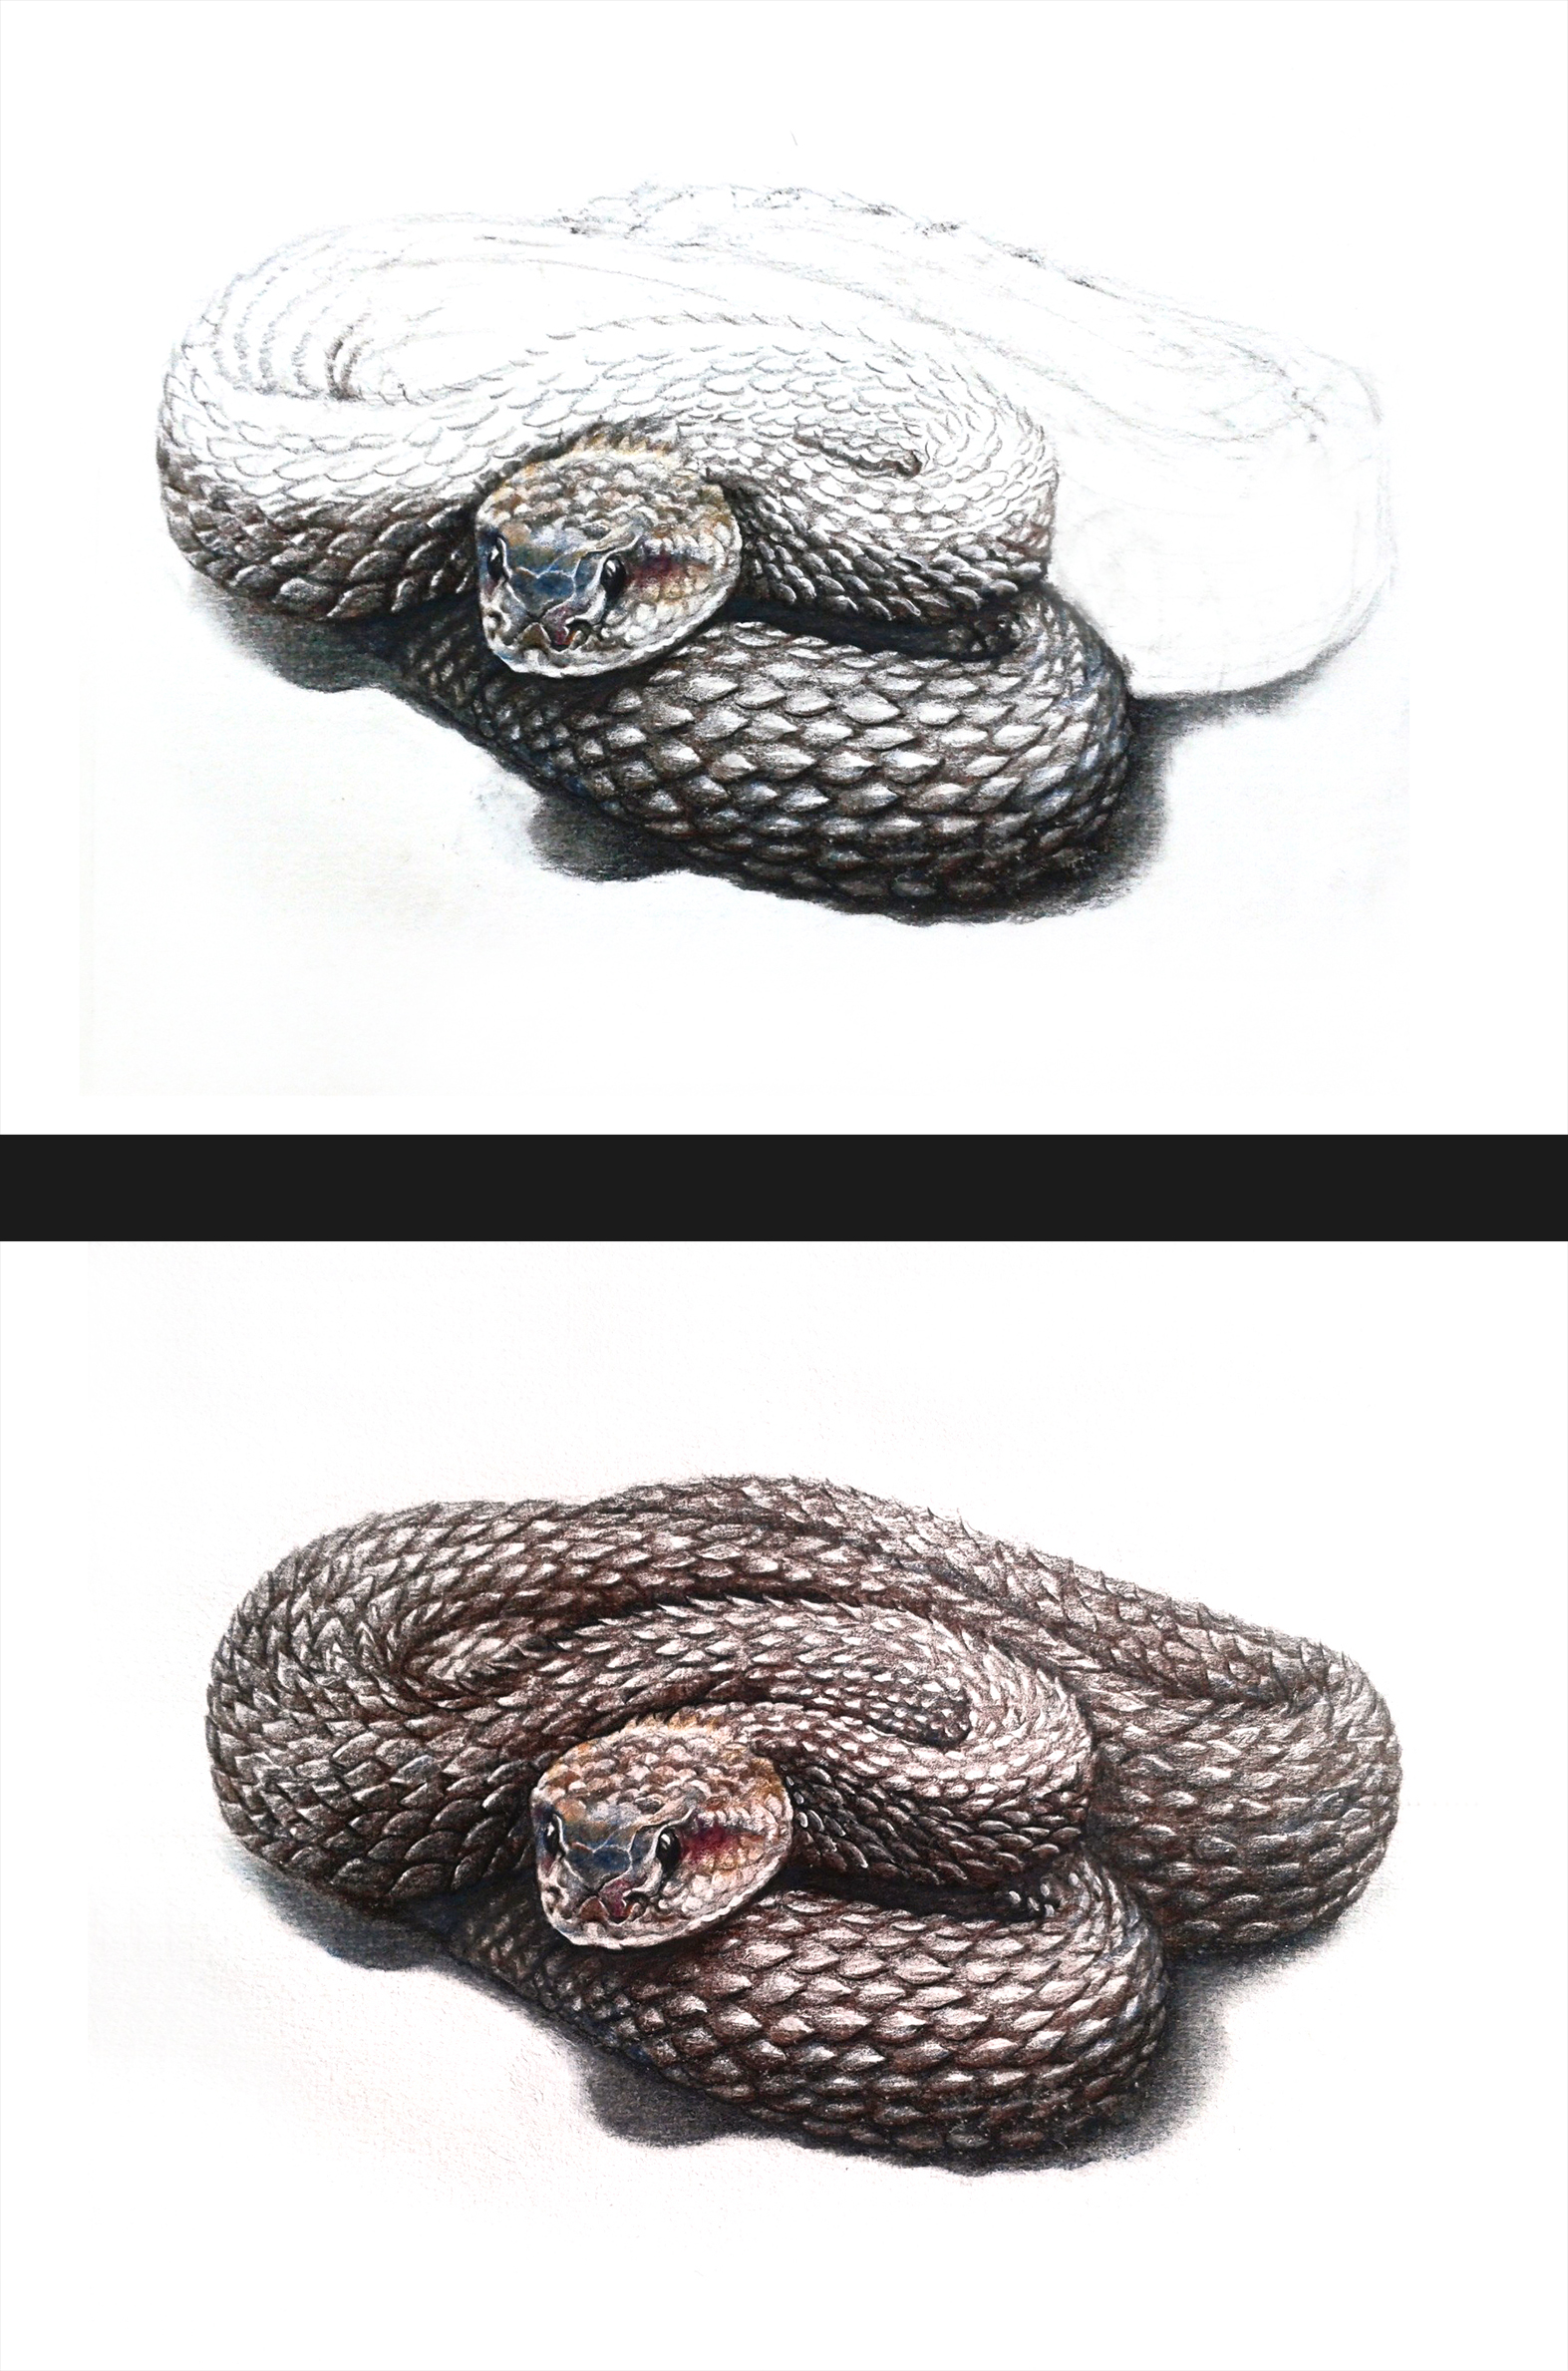 彩铅响尾蛇